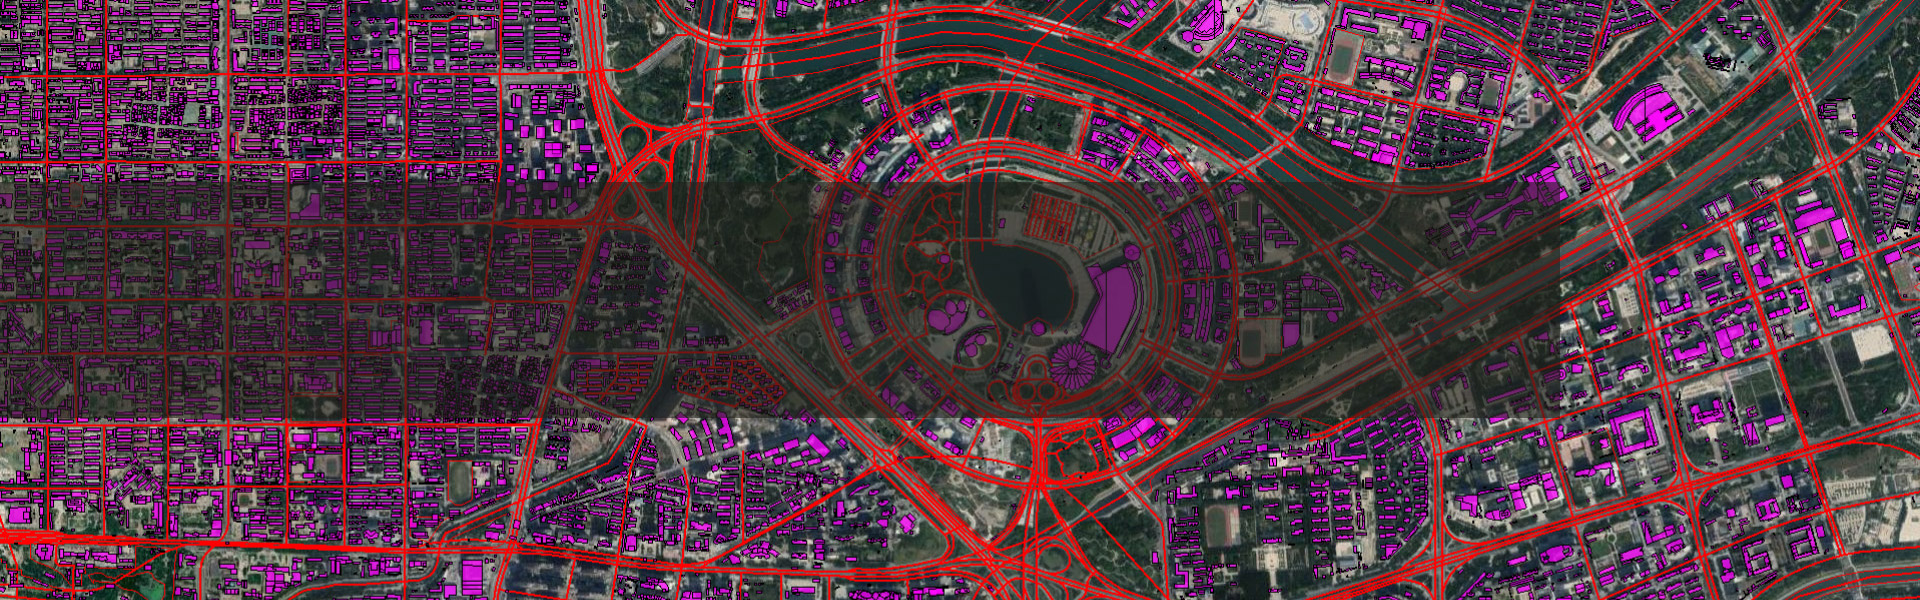 新版谷歌地图高清卫星地图下载拼接,地图标注,DEM高程下载,等高线提取,矢量数据(WGS84,西安80,北京54,2000坐标)叠加配准,投影转换;支持AutoCAD,ArcGIS等行业软件。